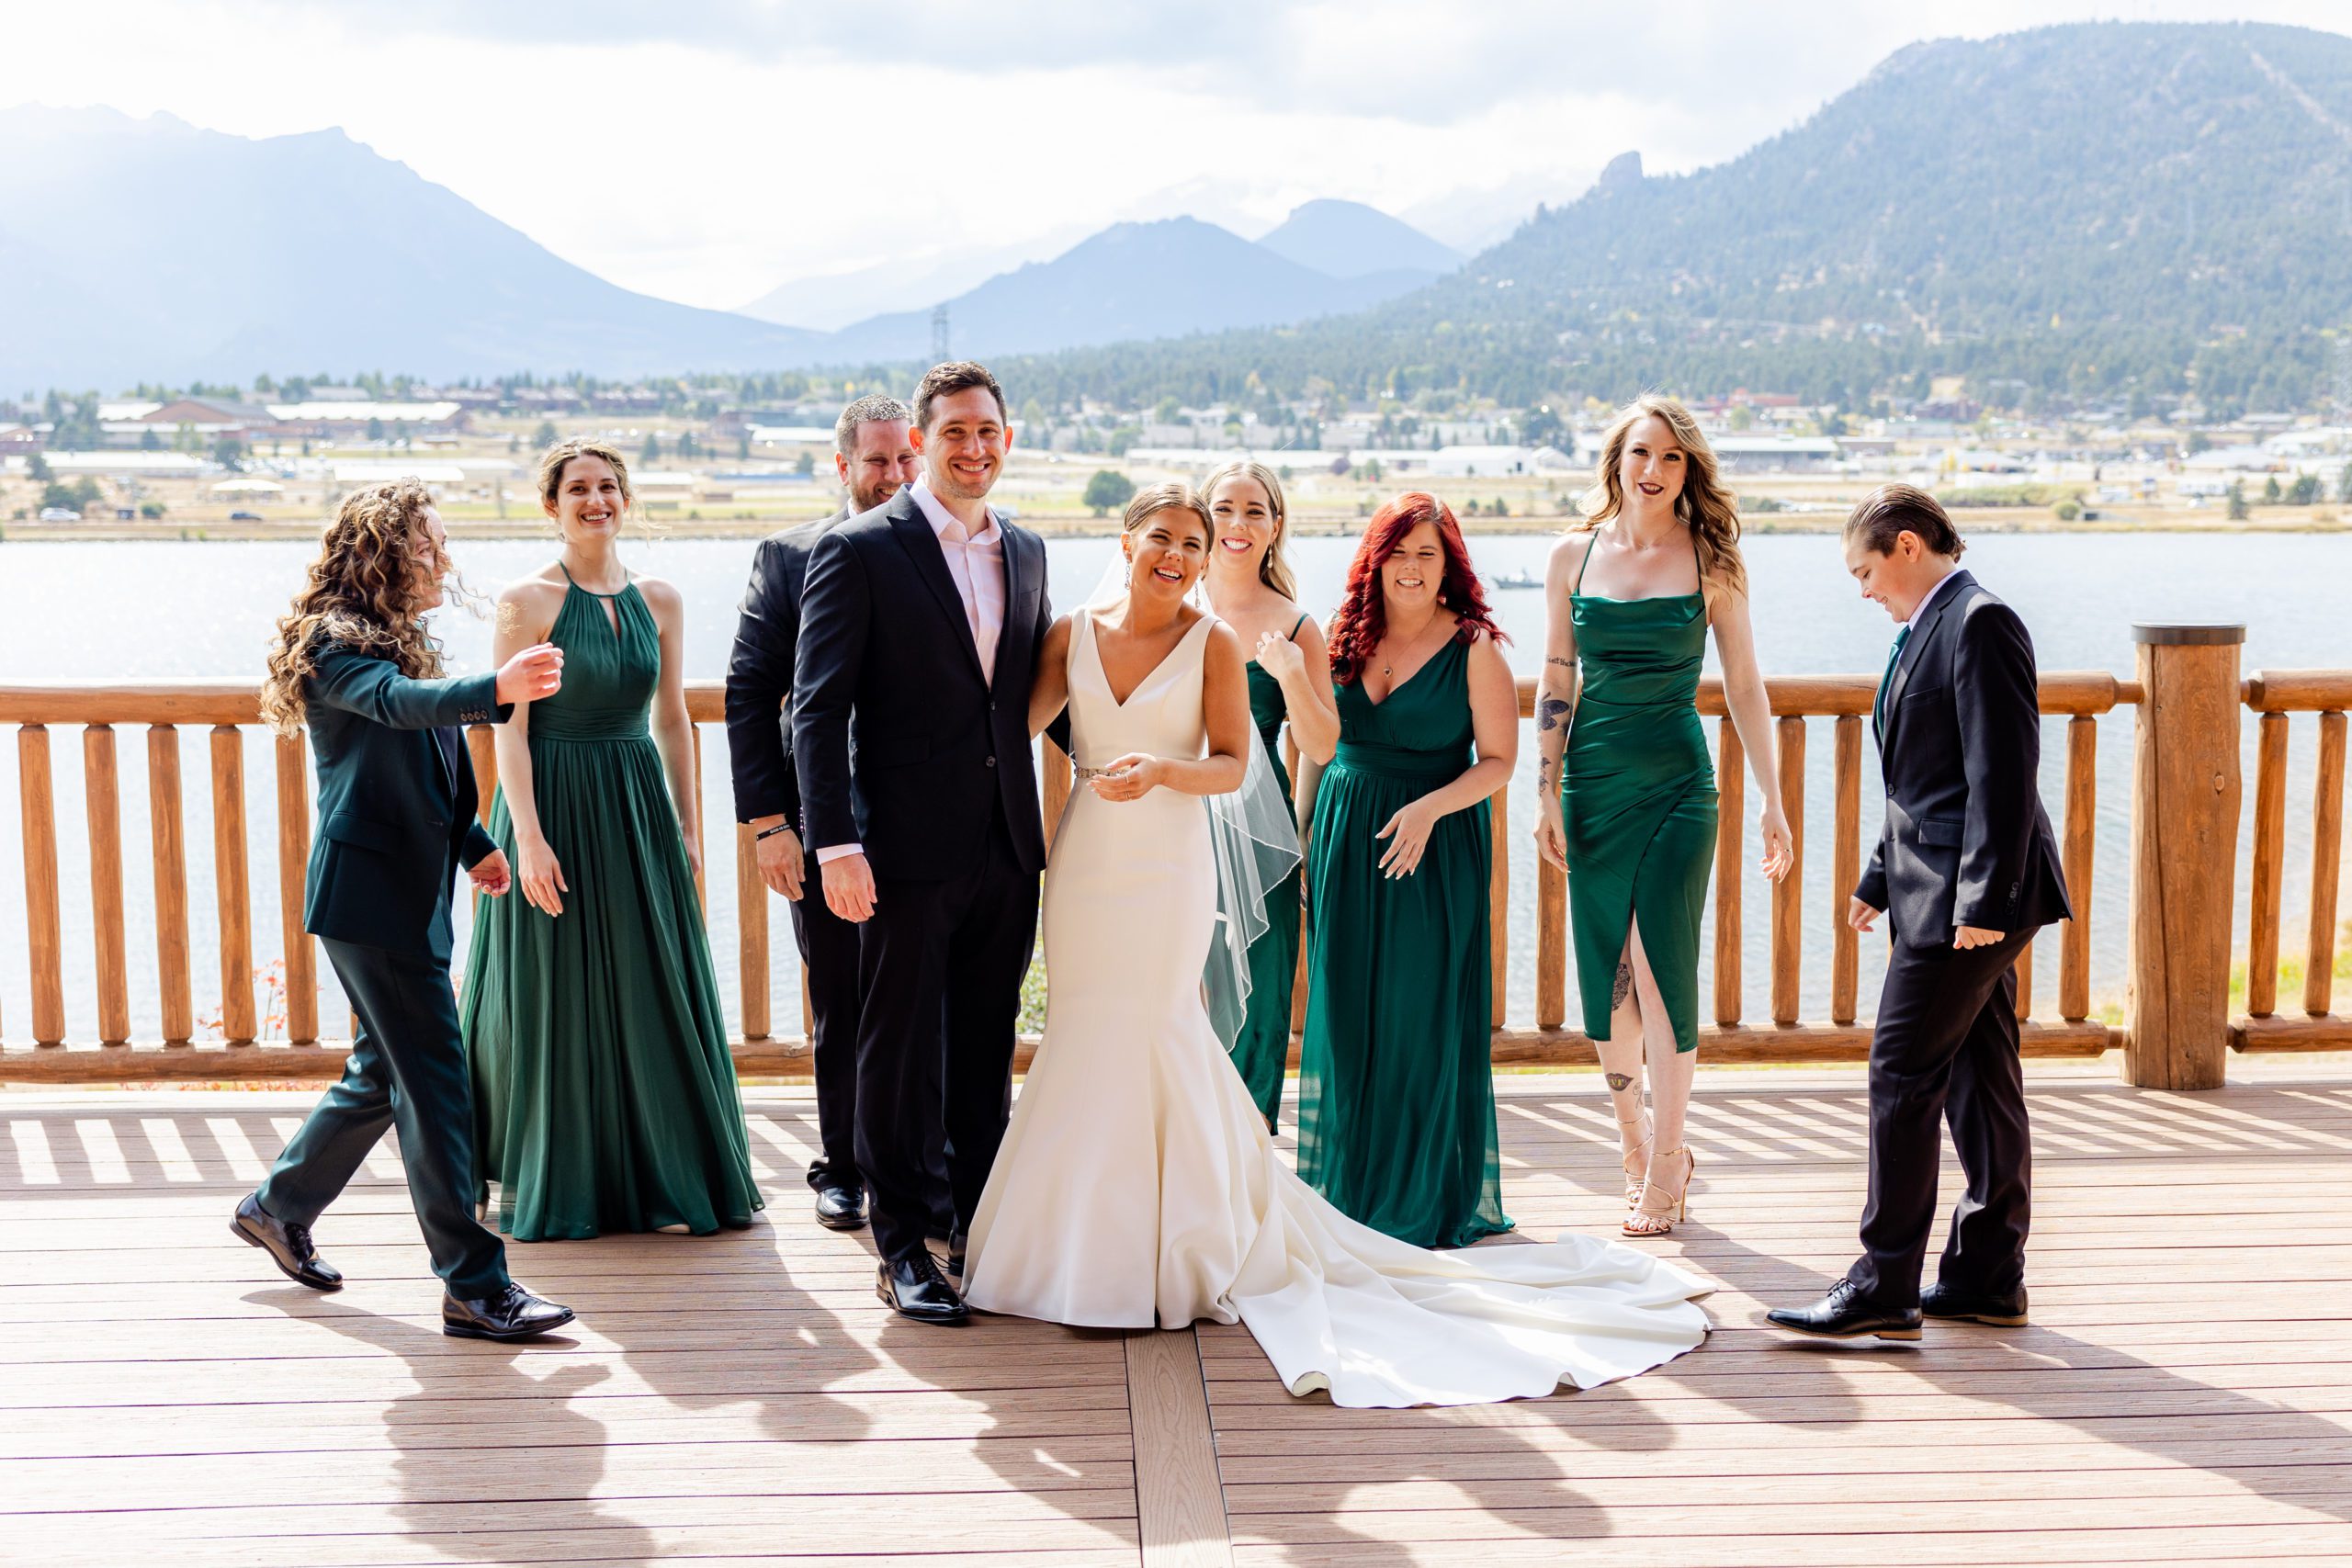 Green bridesmaids dresses, Estes Park Resort wedding, Destination wedding in Colorado